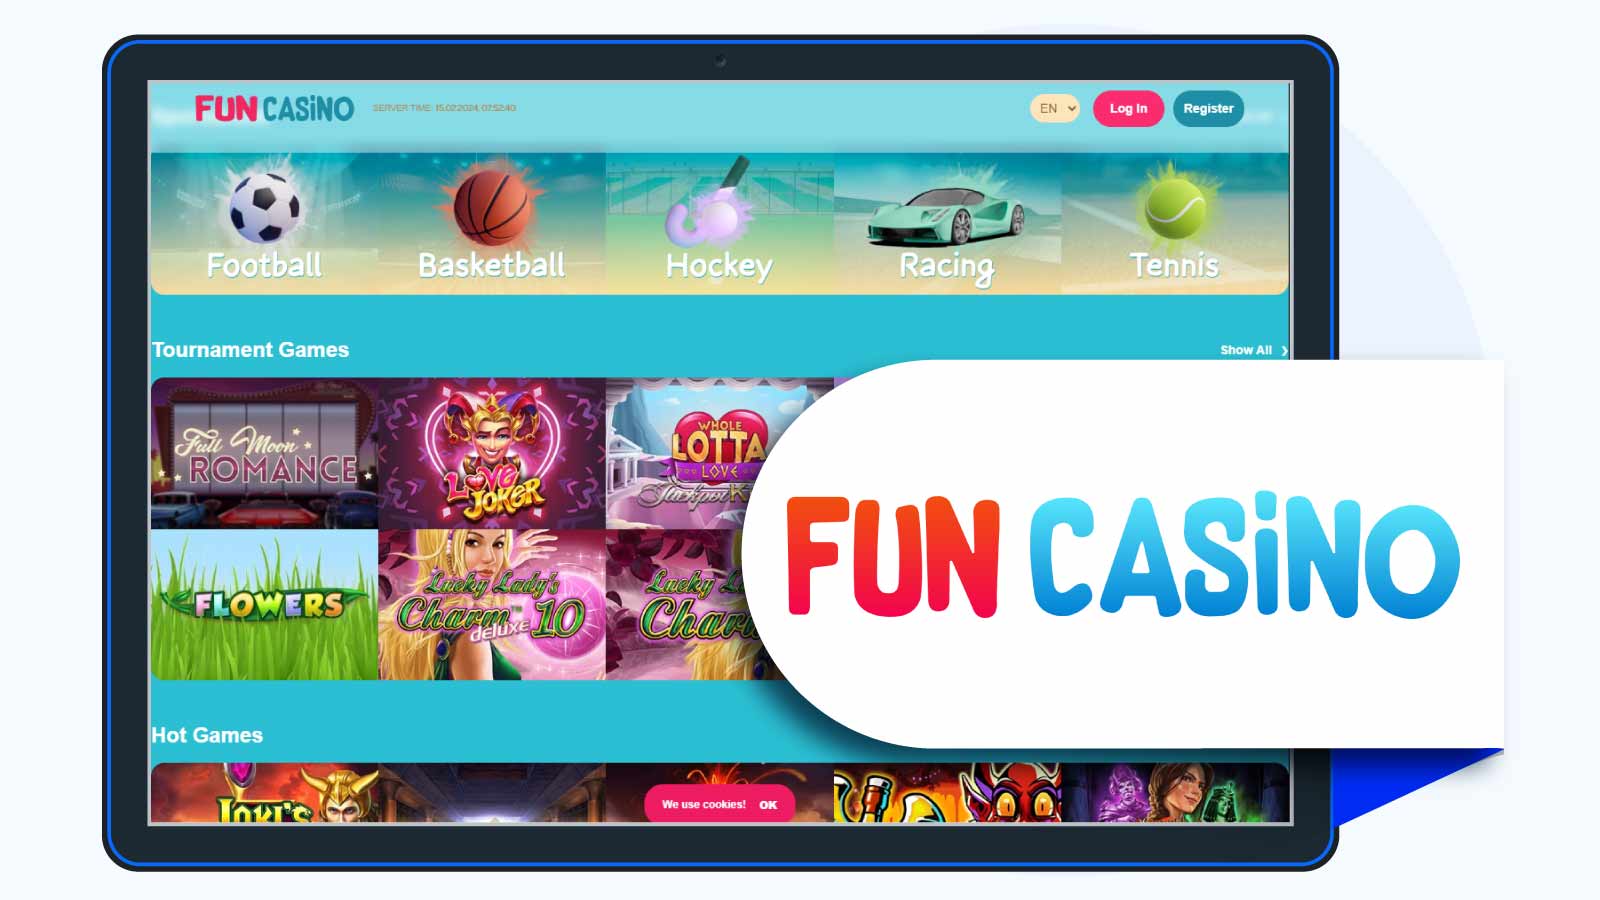 Fun Casino – Best L&L Europe Casino for Deposit bonuses